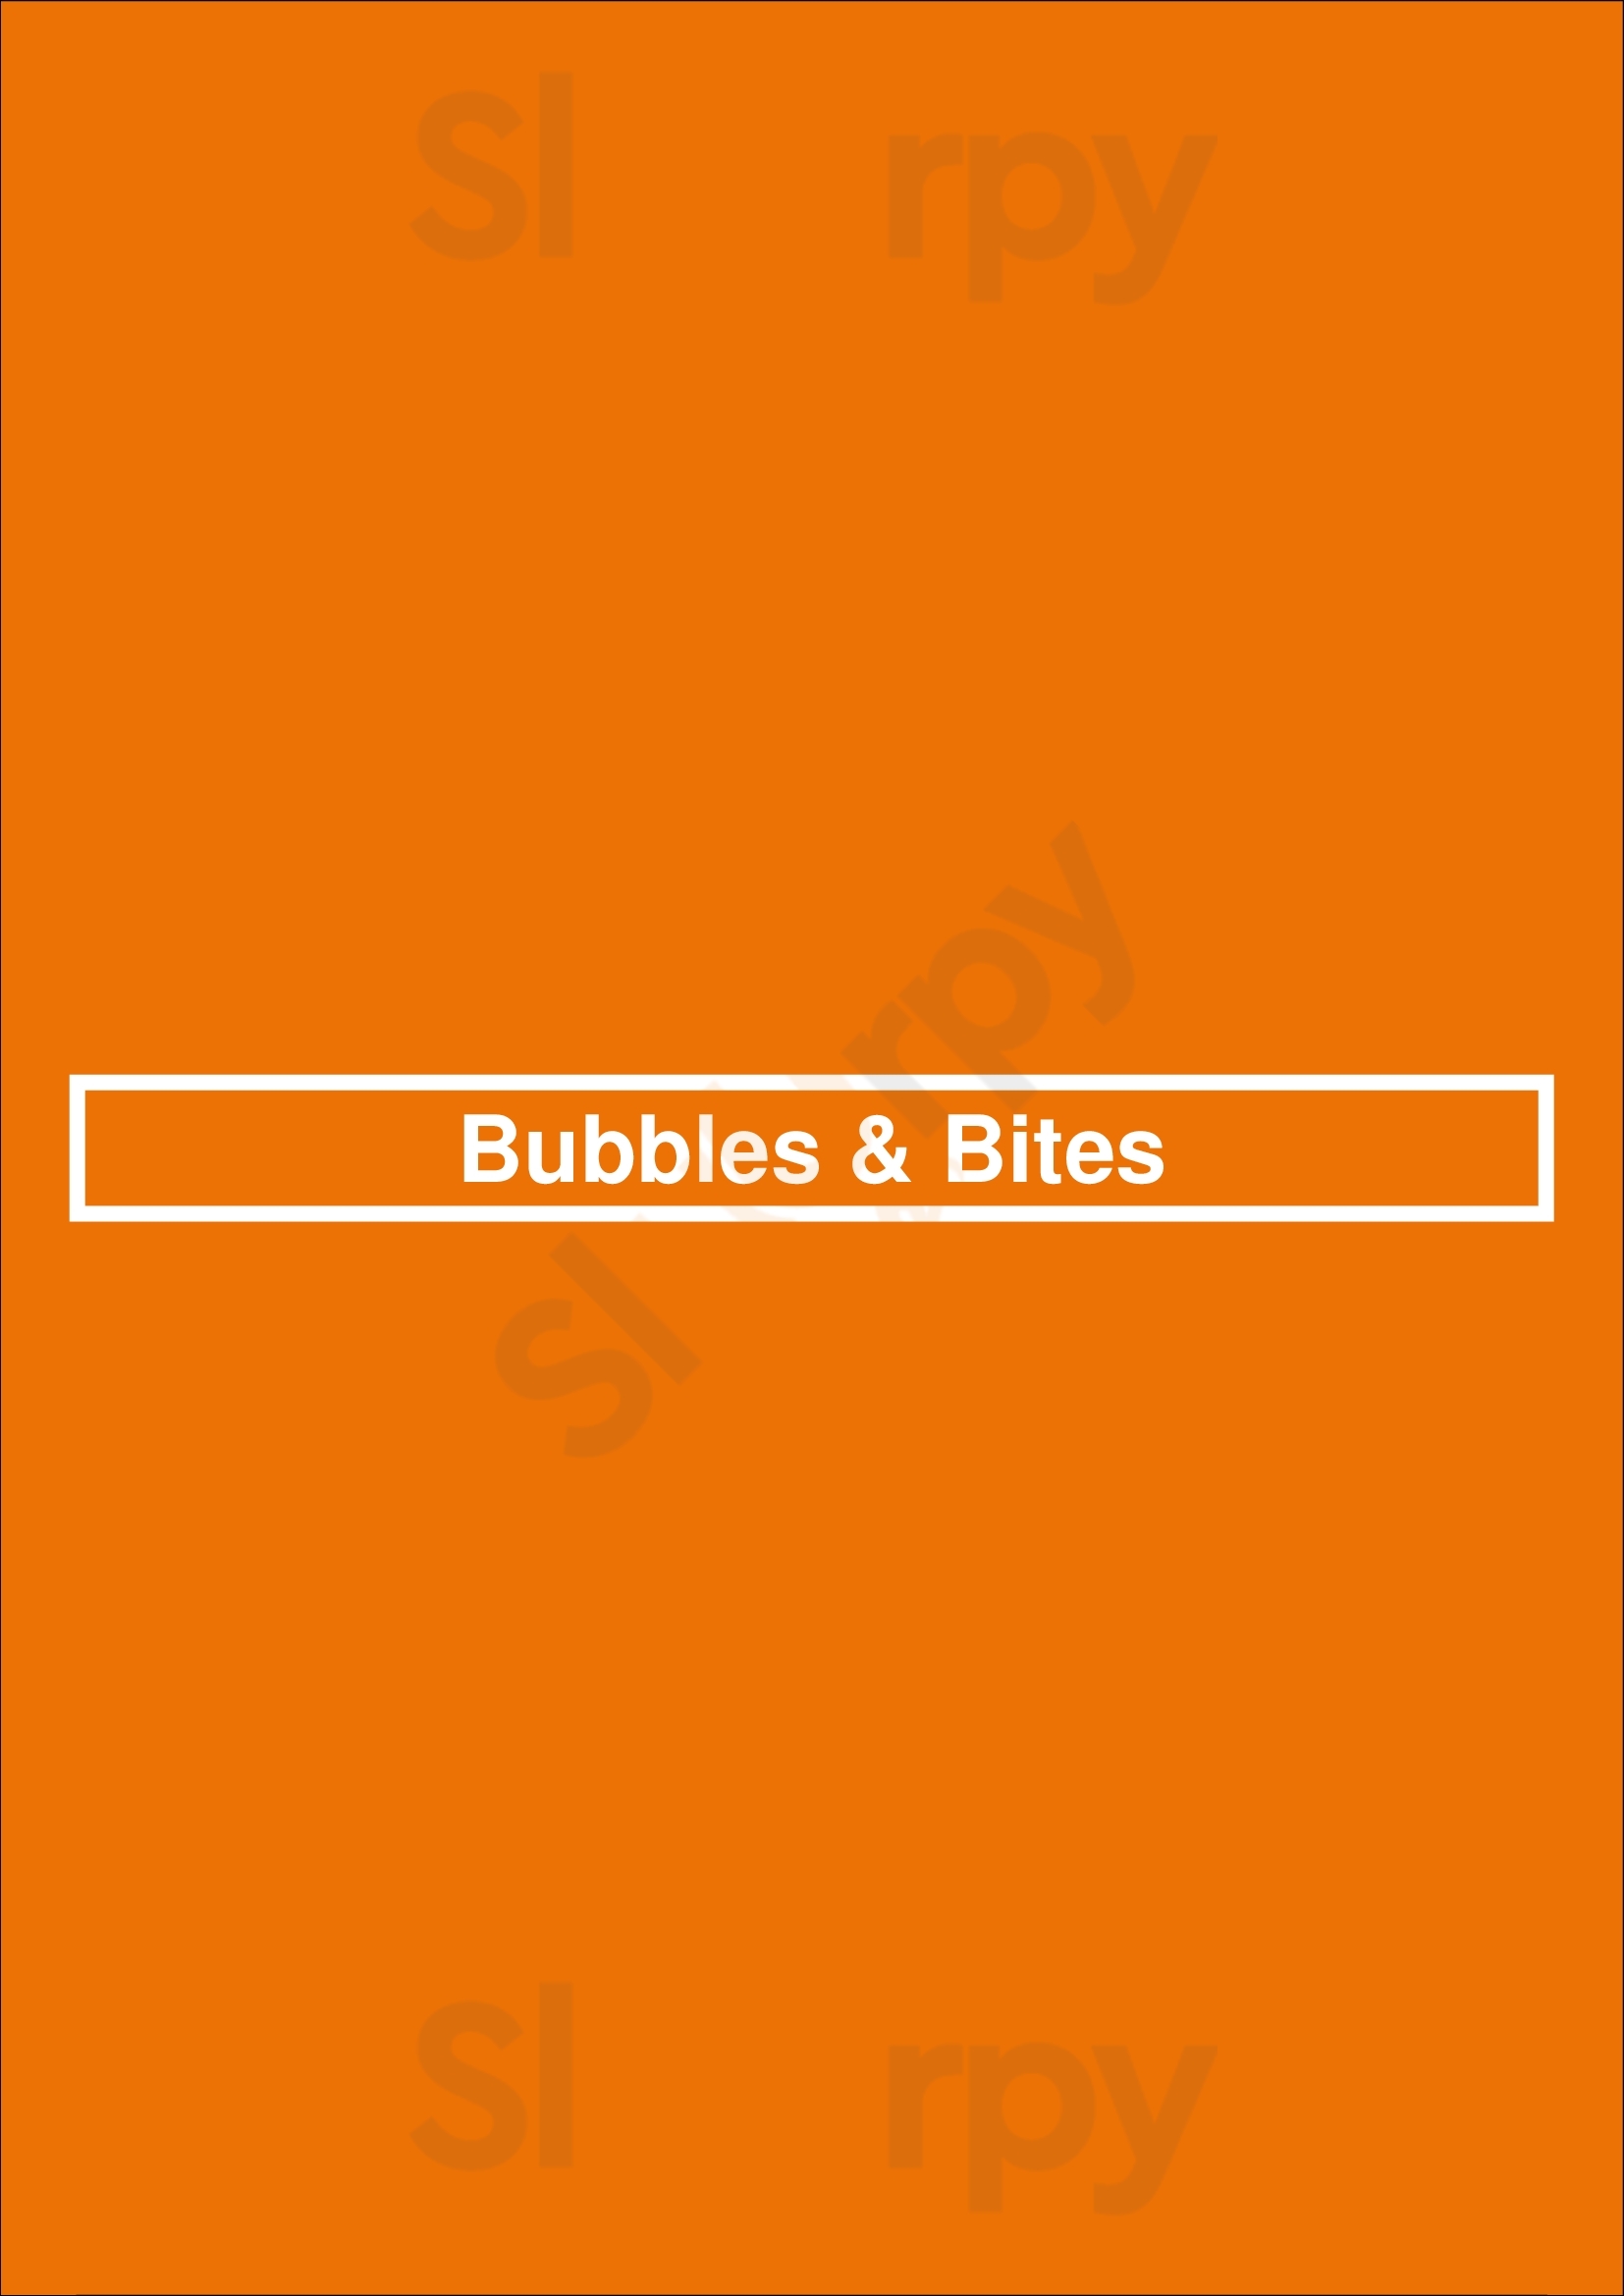 Bubbles & Bites Roermond Menu - 1